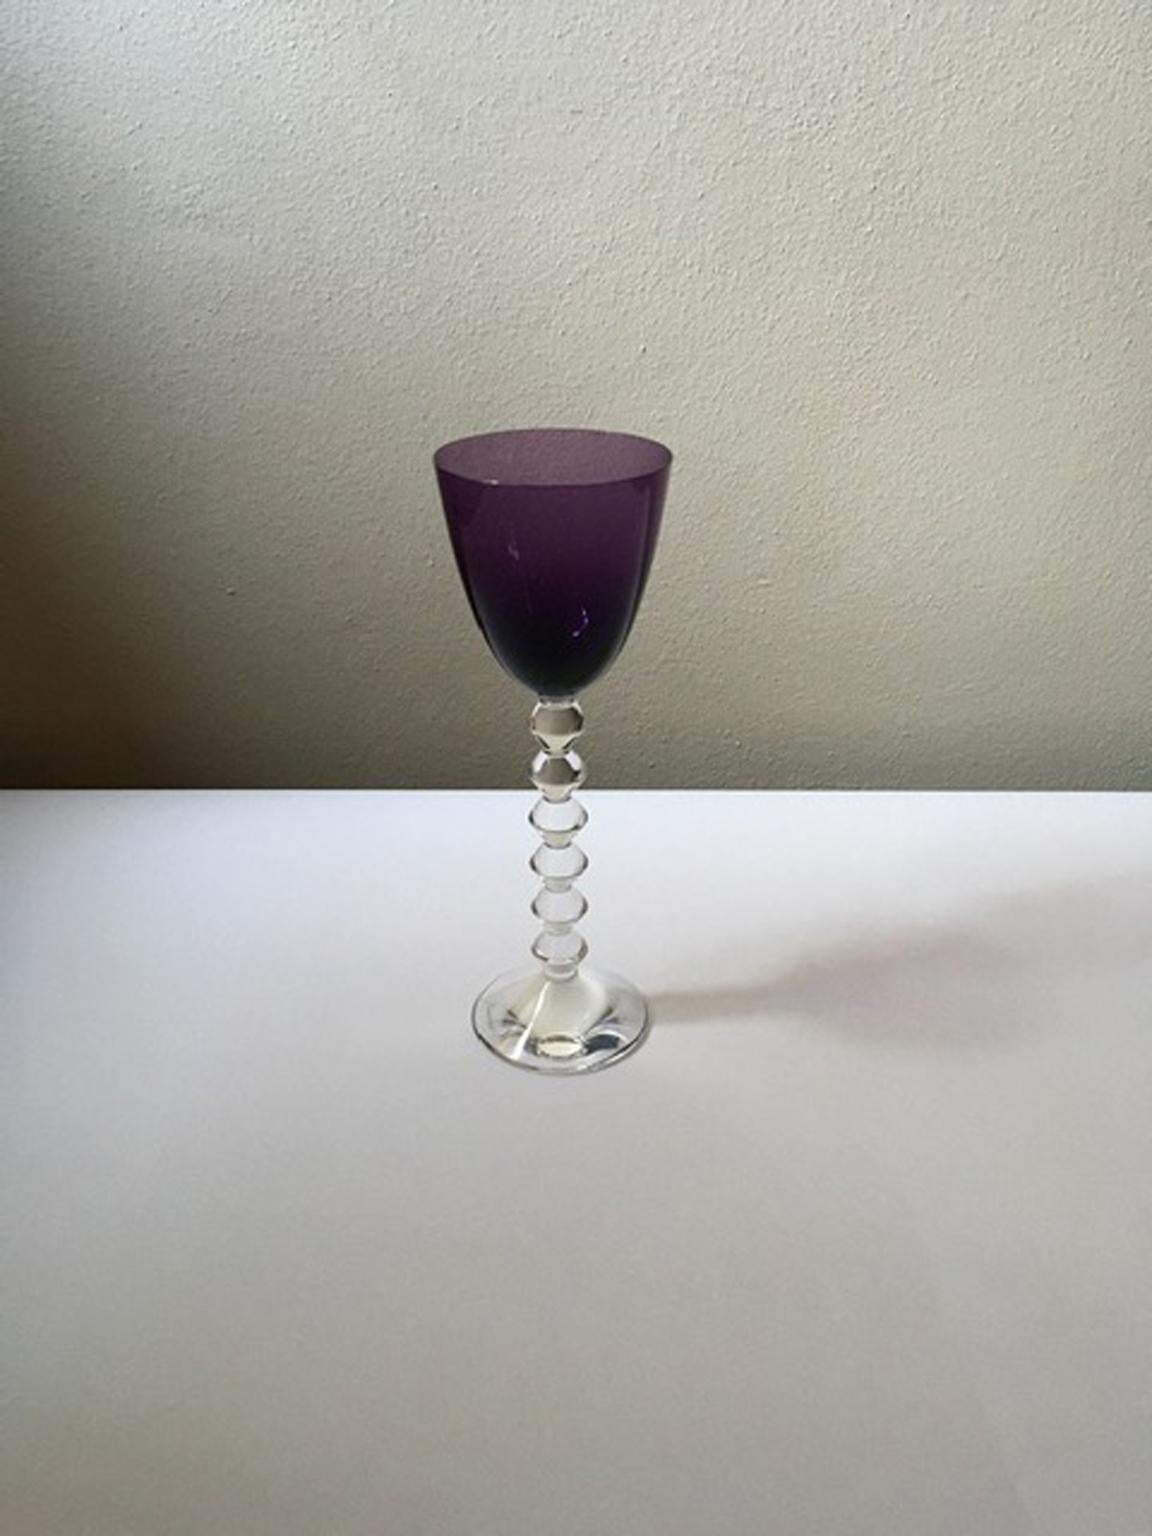 Baccarat Purple Crystal Goblet, France 4